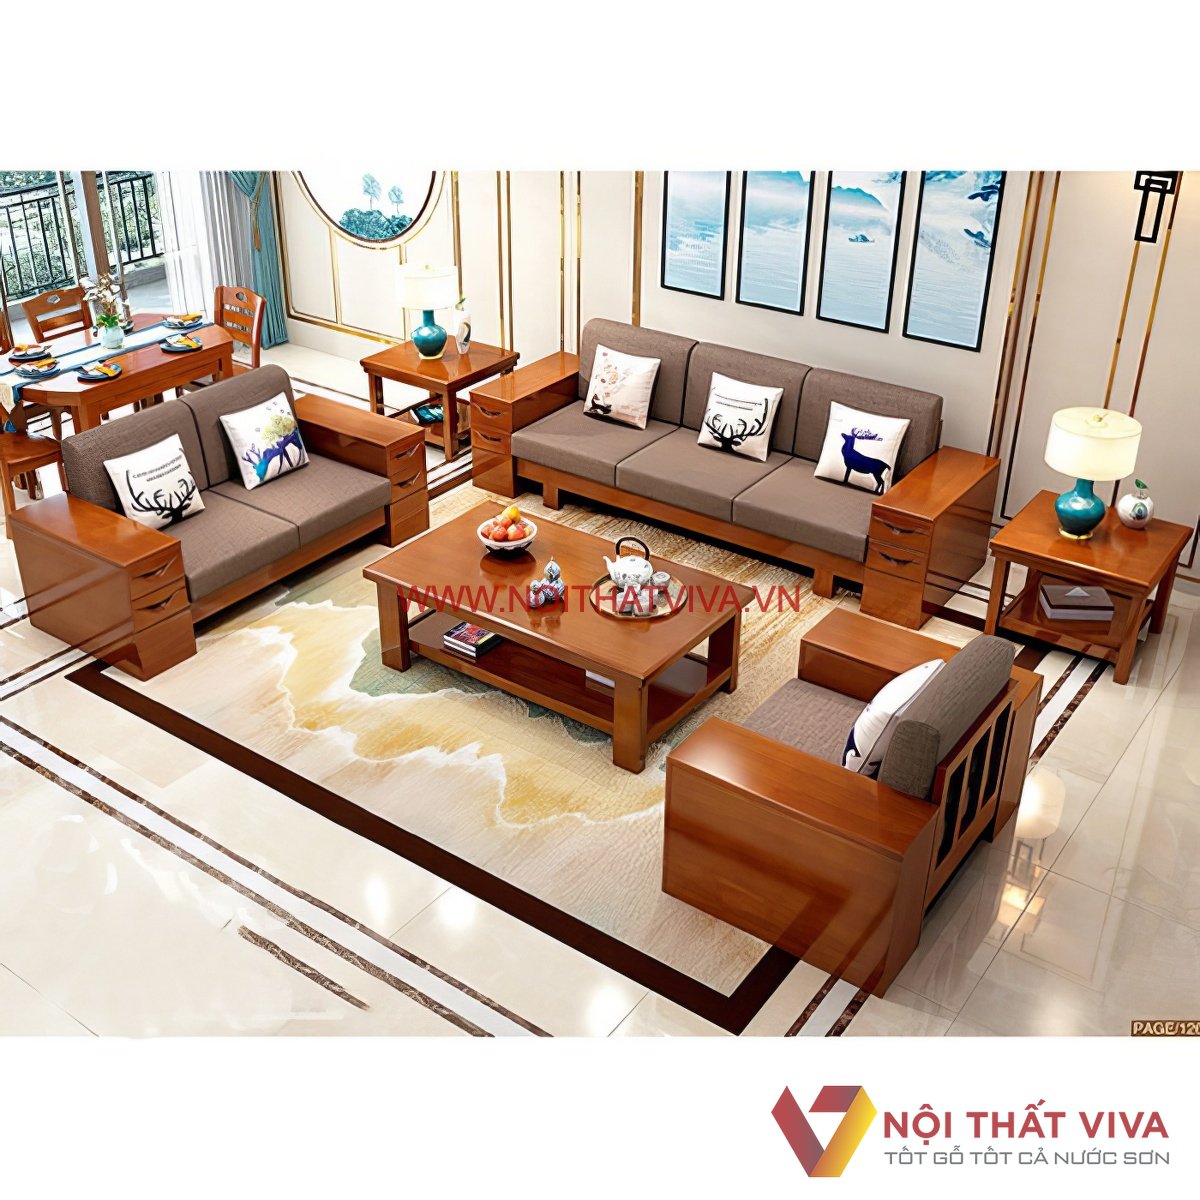 Tham khảo các mẫu bàn ghế gỗ phòng khách giá 5 triệu | websosanh.vn